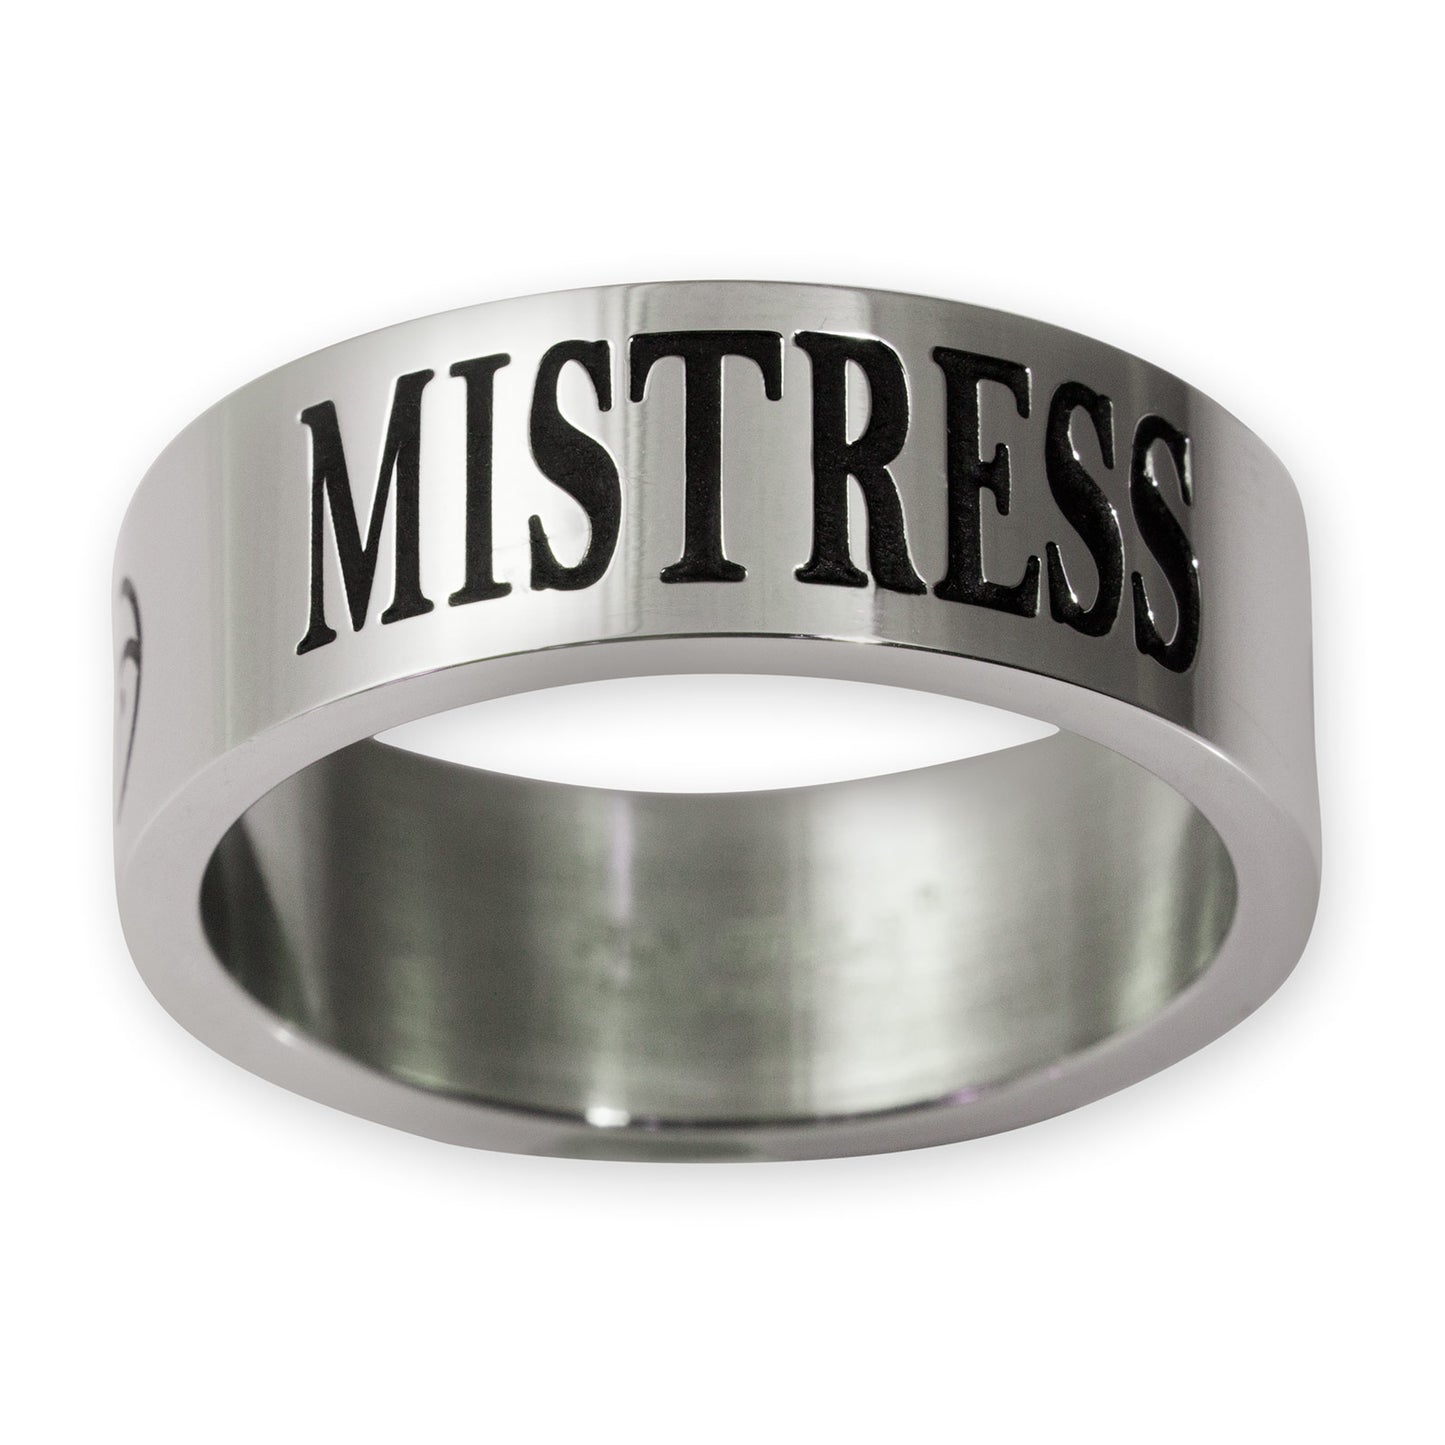 RVS ring met Mistress (verschillende maten)